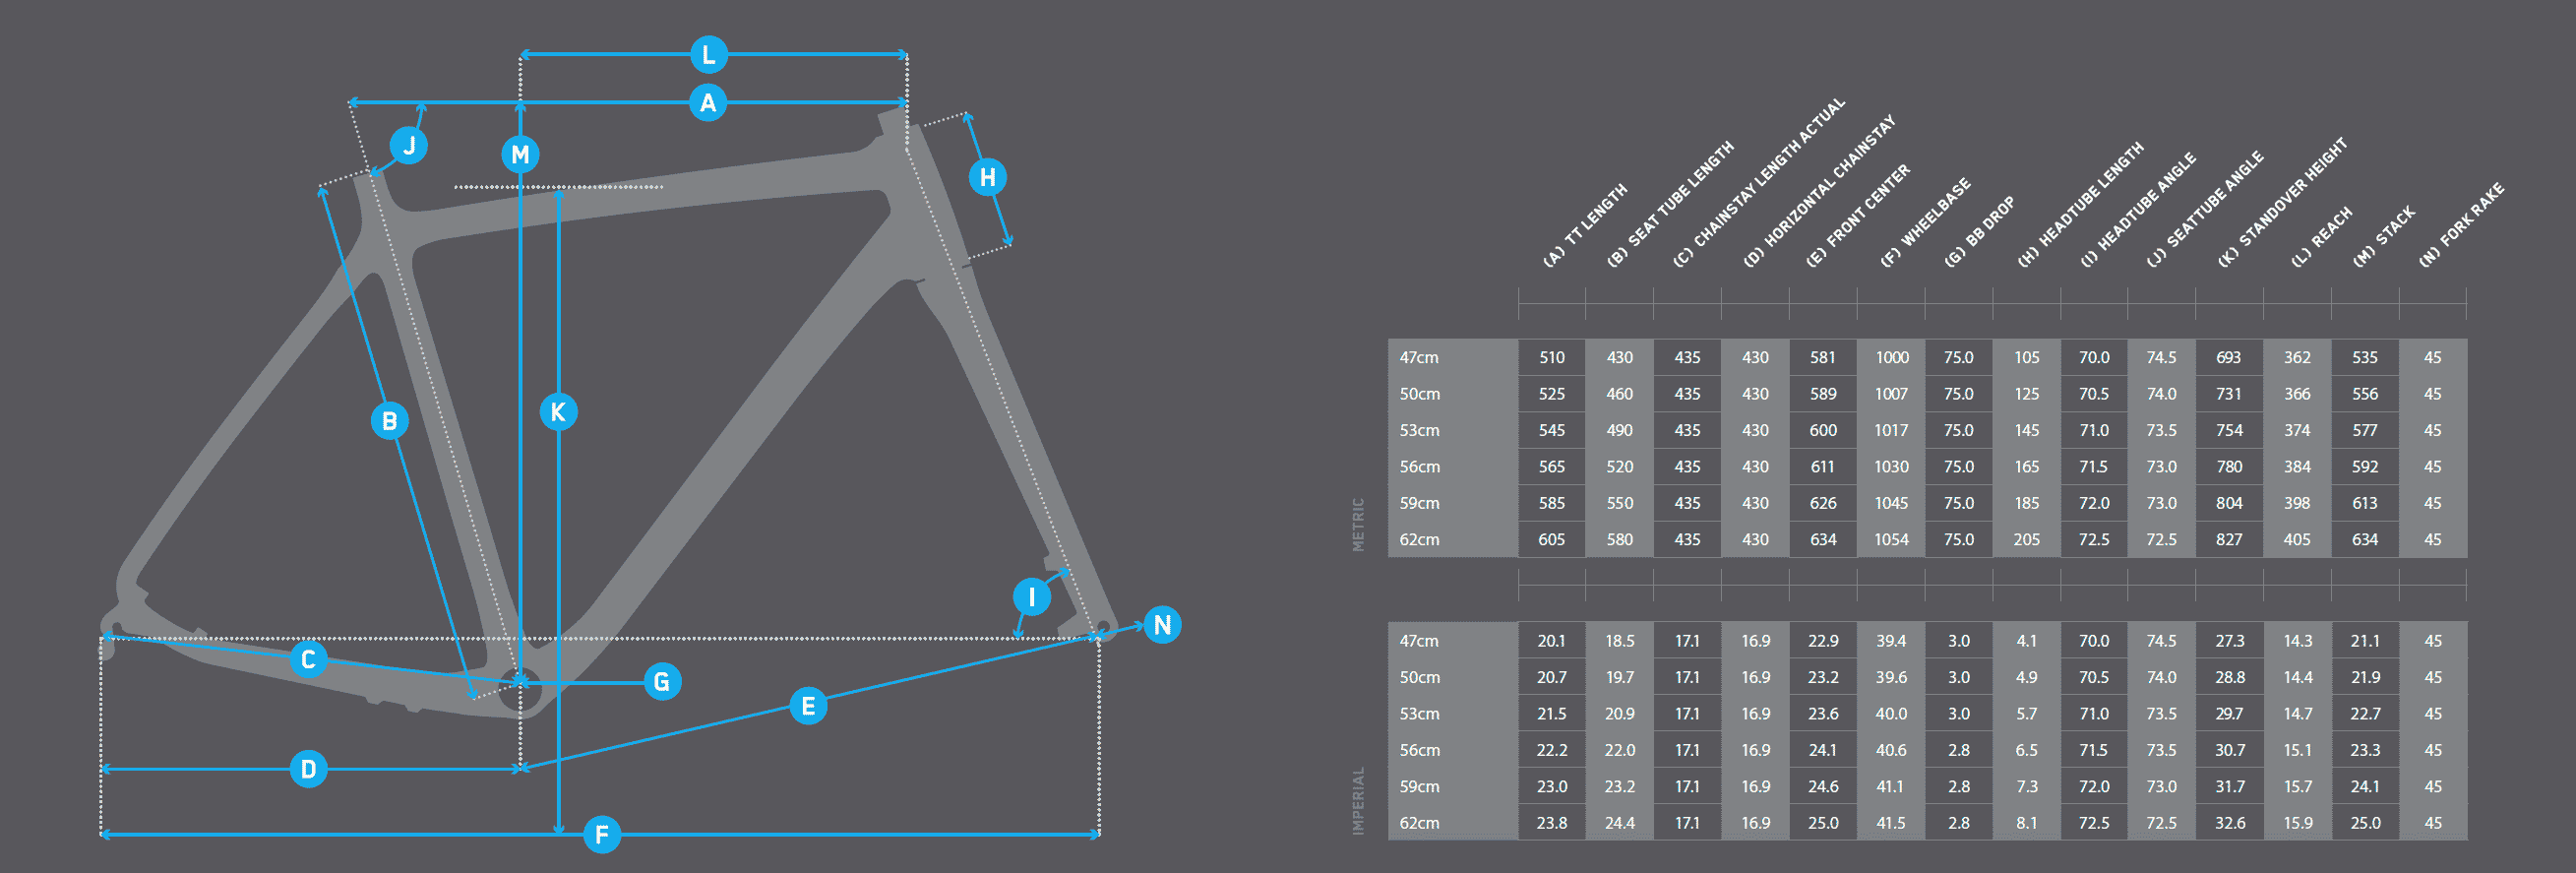 2020 niner rlt9 rdo carbon gravel bike geometry chart